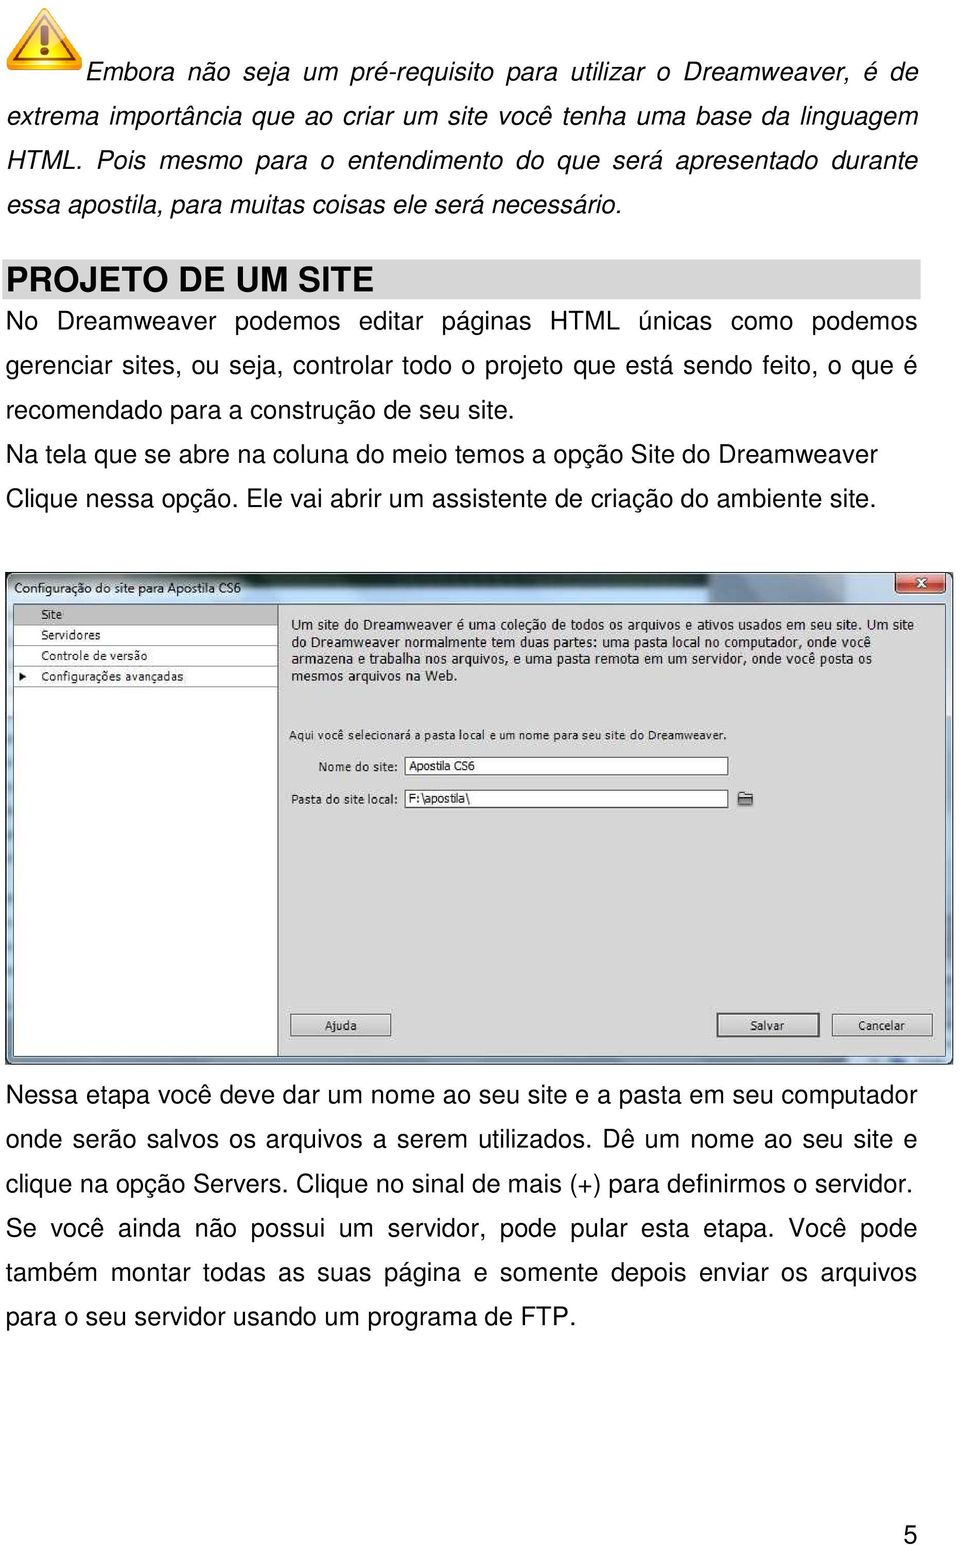 PROJETO DE UM SITE No Dreamweaver podemos editar páginas HTML únicas como podemos gerenciar sites, ou seja, controlar todo o projeto que está sendo feito, o que é recomendado para a construção de seu